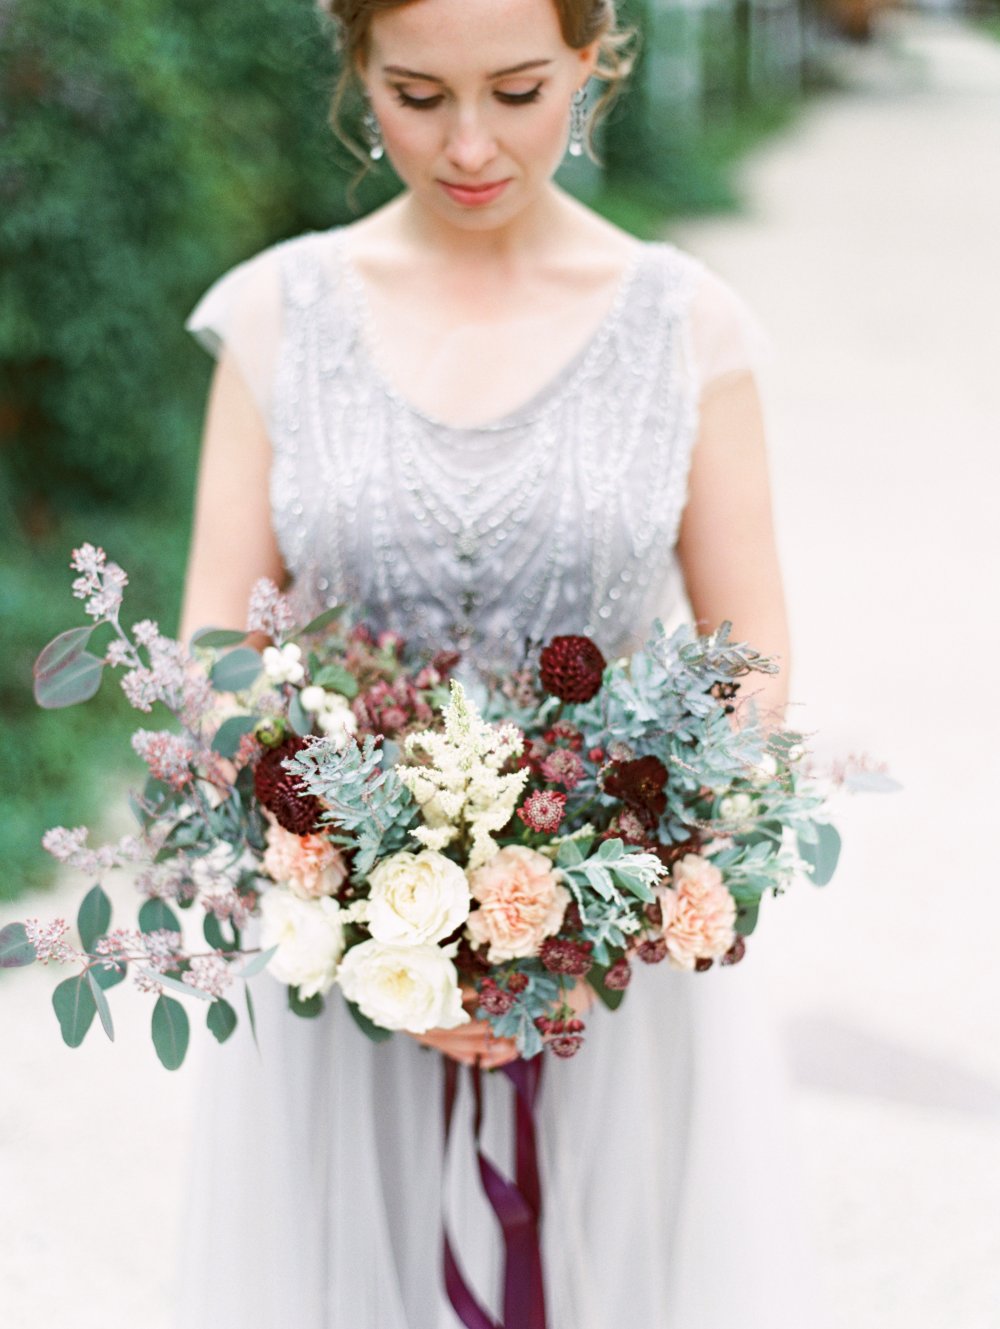 пышный букет невесты в пыльно-сиреневой и бордовой гамме идеально дополнил осенний образ невесты, а пионовидные розы благородно оттенили гамму